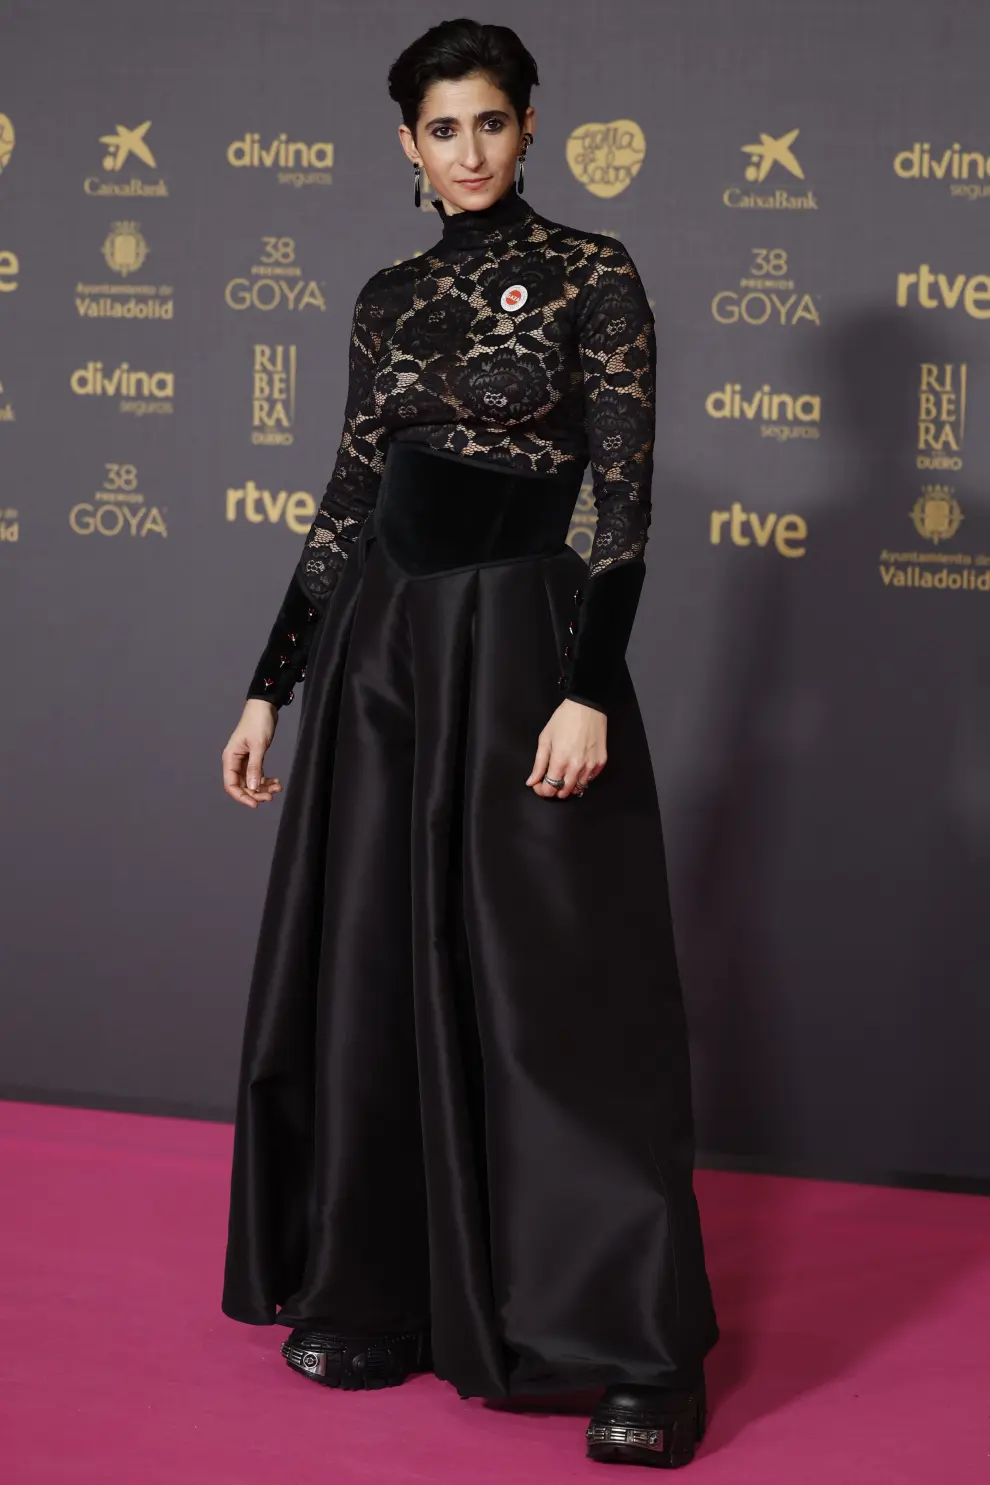 La actriz Alba Flores, de negro sobre la afombra rosa de Valladolid